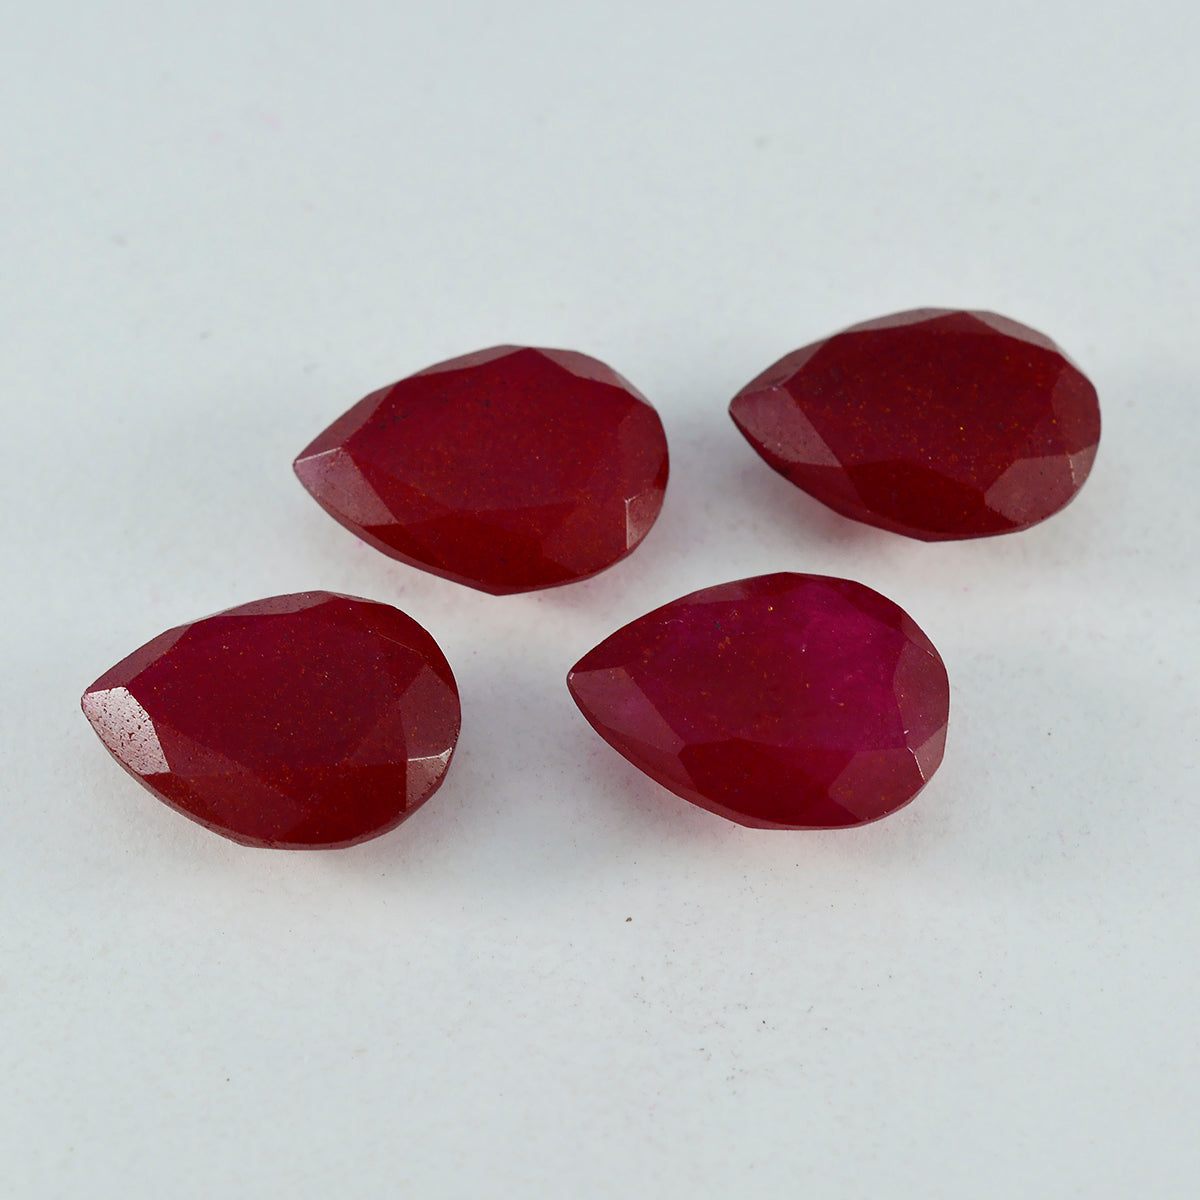 Riyogems 1 pièce véritable jaspe rouge à facettes 8x12mm en forme de poire grande qualité pierre précieuse en vrac